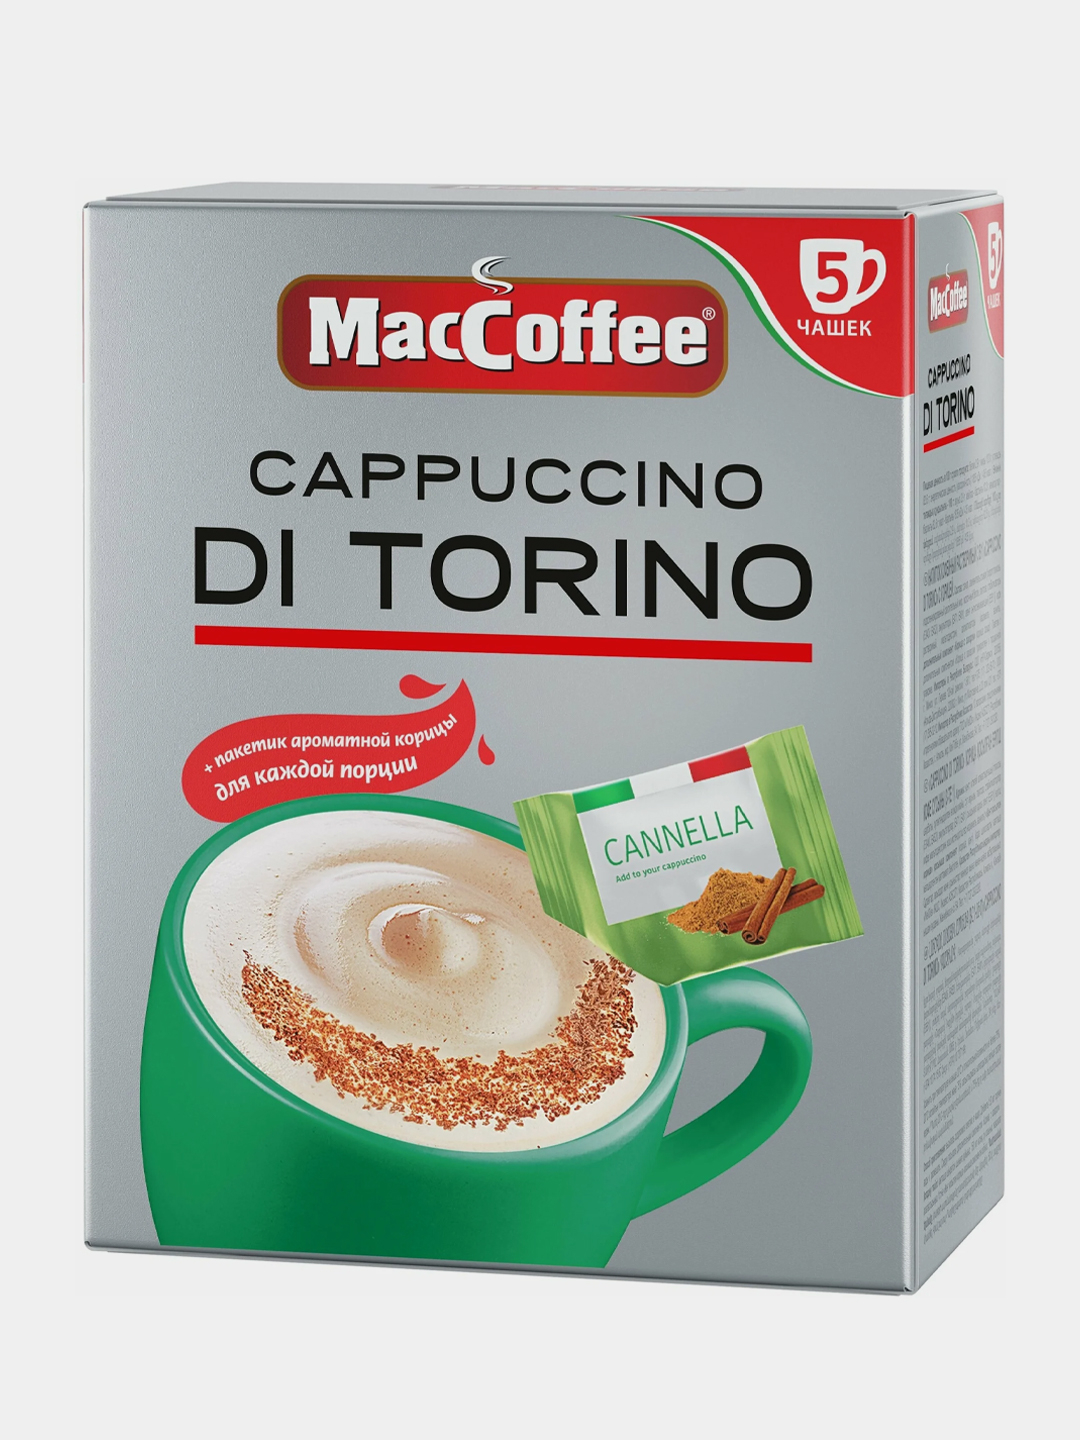 Маккофе торино. Кофе MACCOFFEE 3в1 капучино di Torino 25,5гр. Маккофе 3 в 1 ди Торино. Напиток кофейный MACCOFFEE Cappuccino di Torino 3в1. Маккофе 3 в 1 капучино.